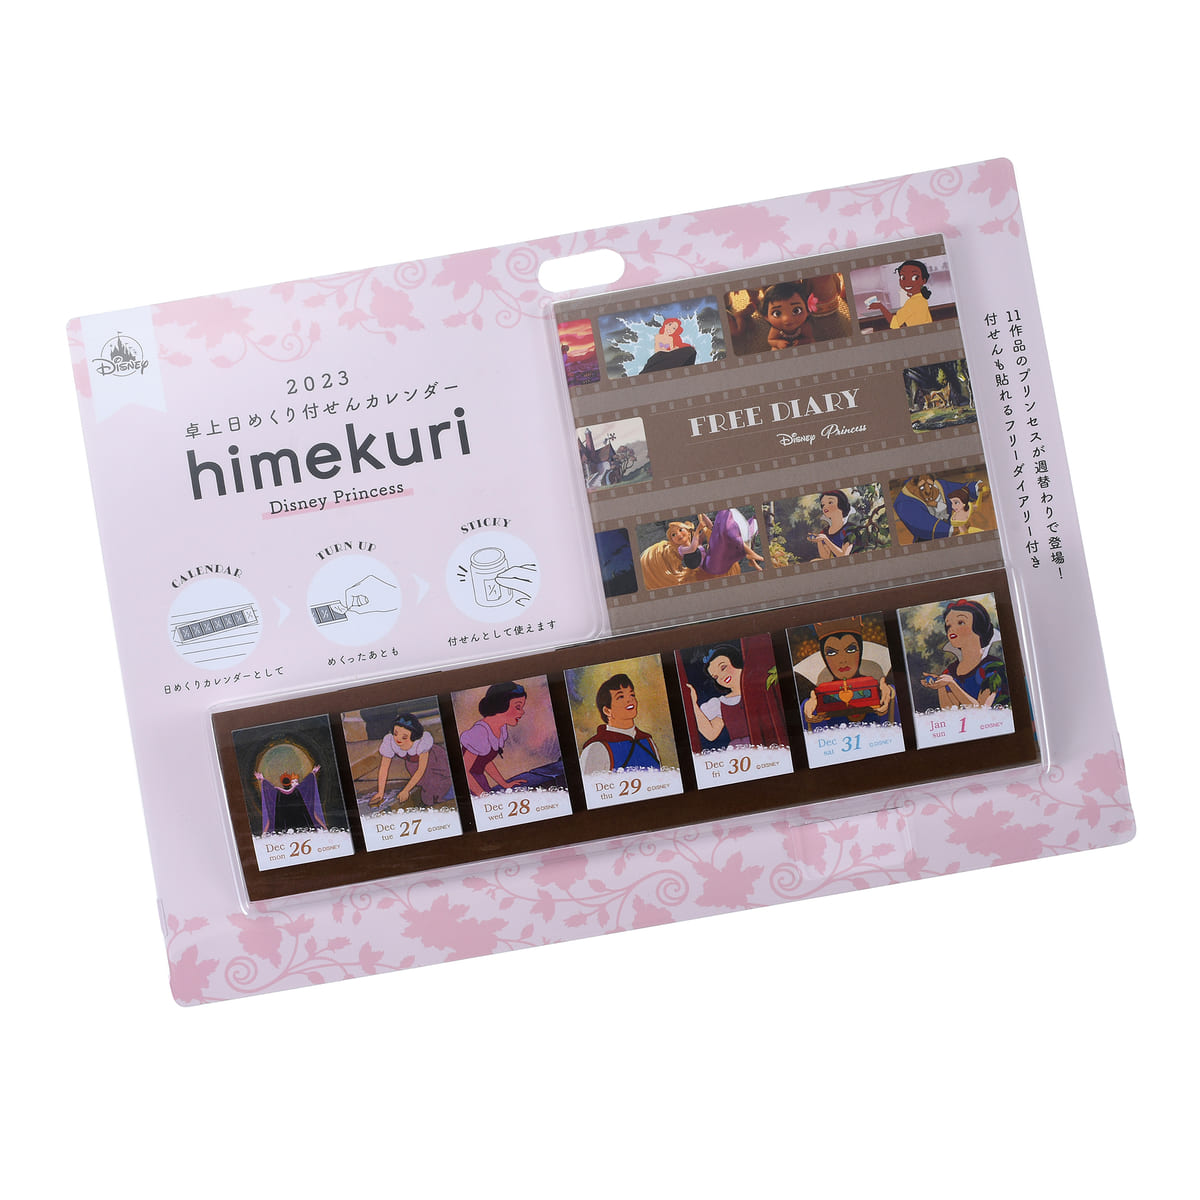 「himekuri」ディズニープリンセス 卓上日めくりカレンダー 付箋 2023 CALENDARS＆ORGANIZERS